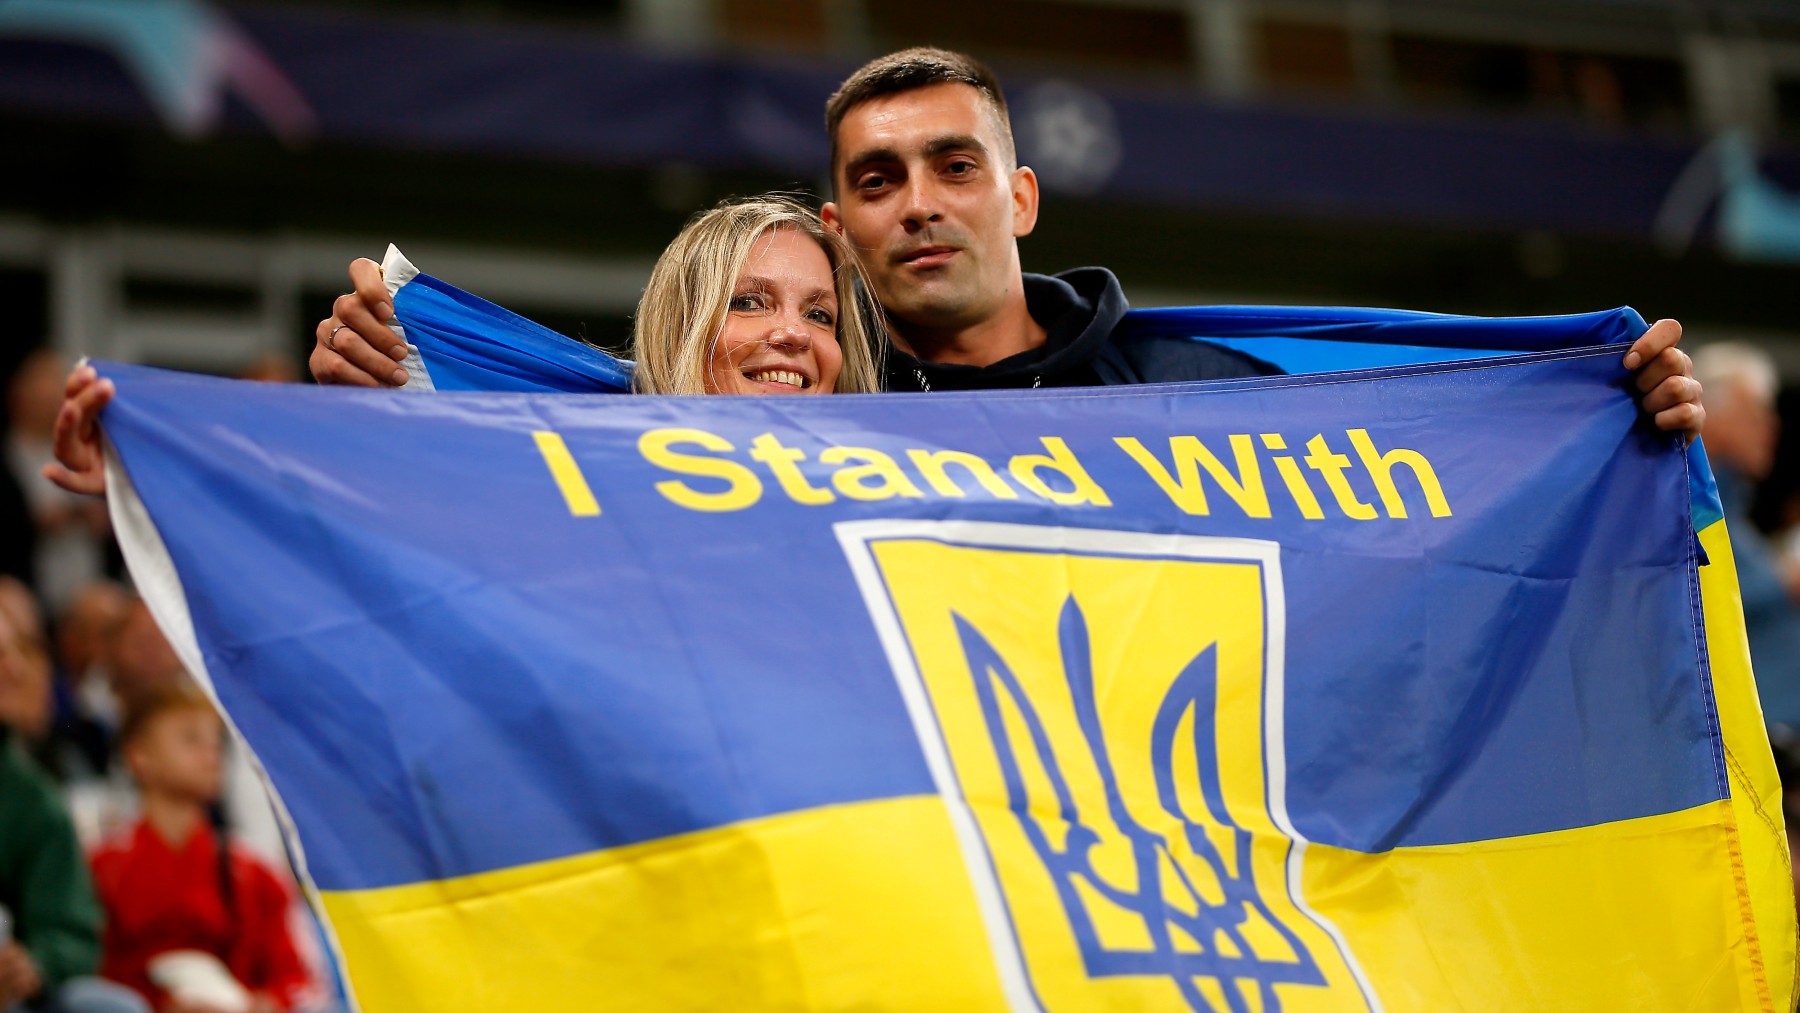 Aficionados del Shakhtar Donetsk, en un partido con la bandera de Ucrania. (Getty)